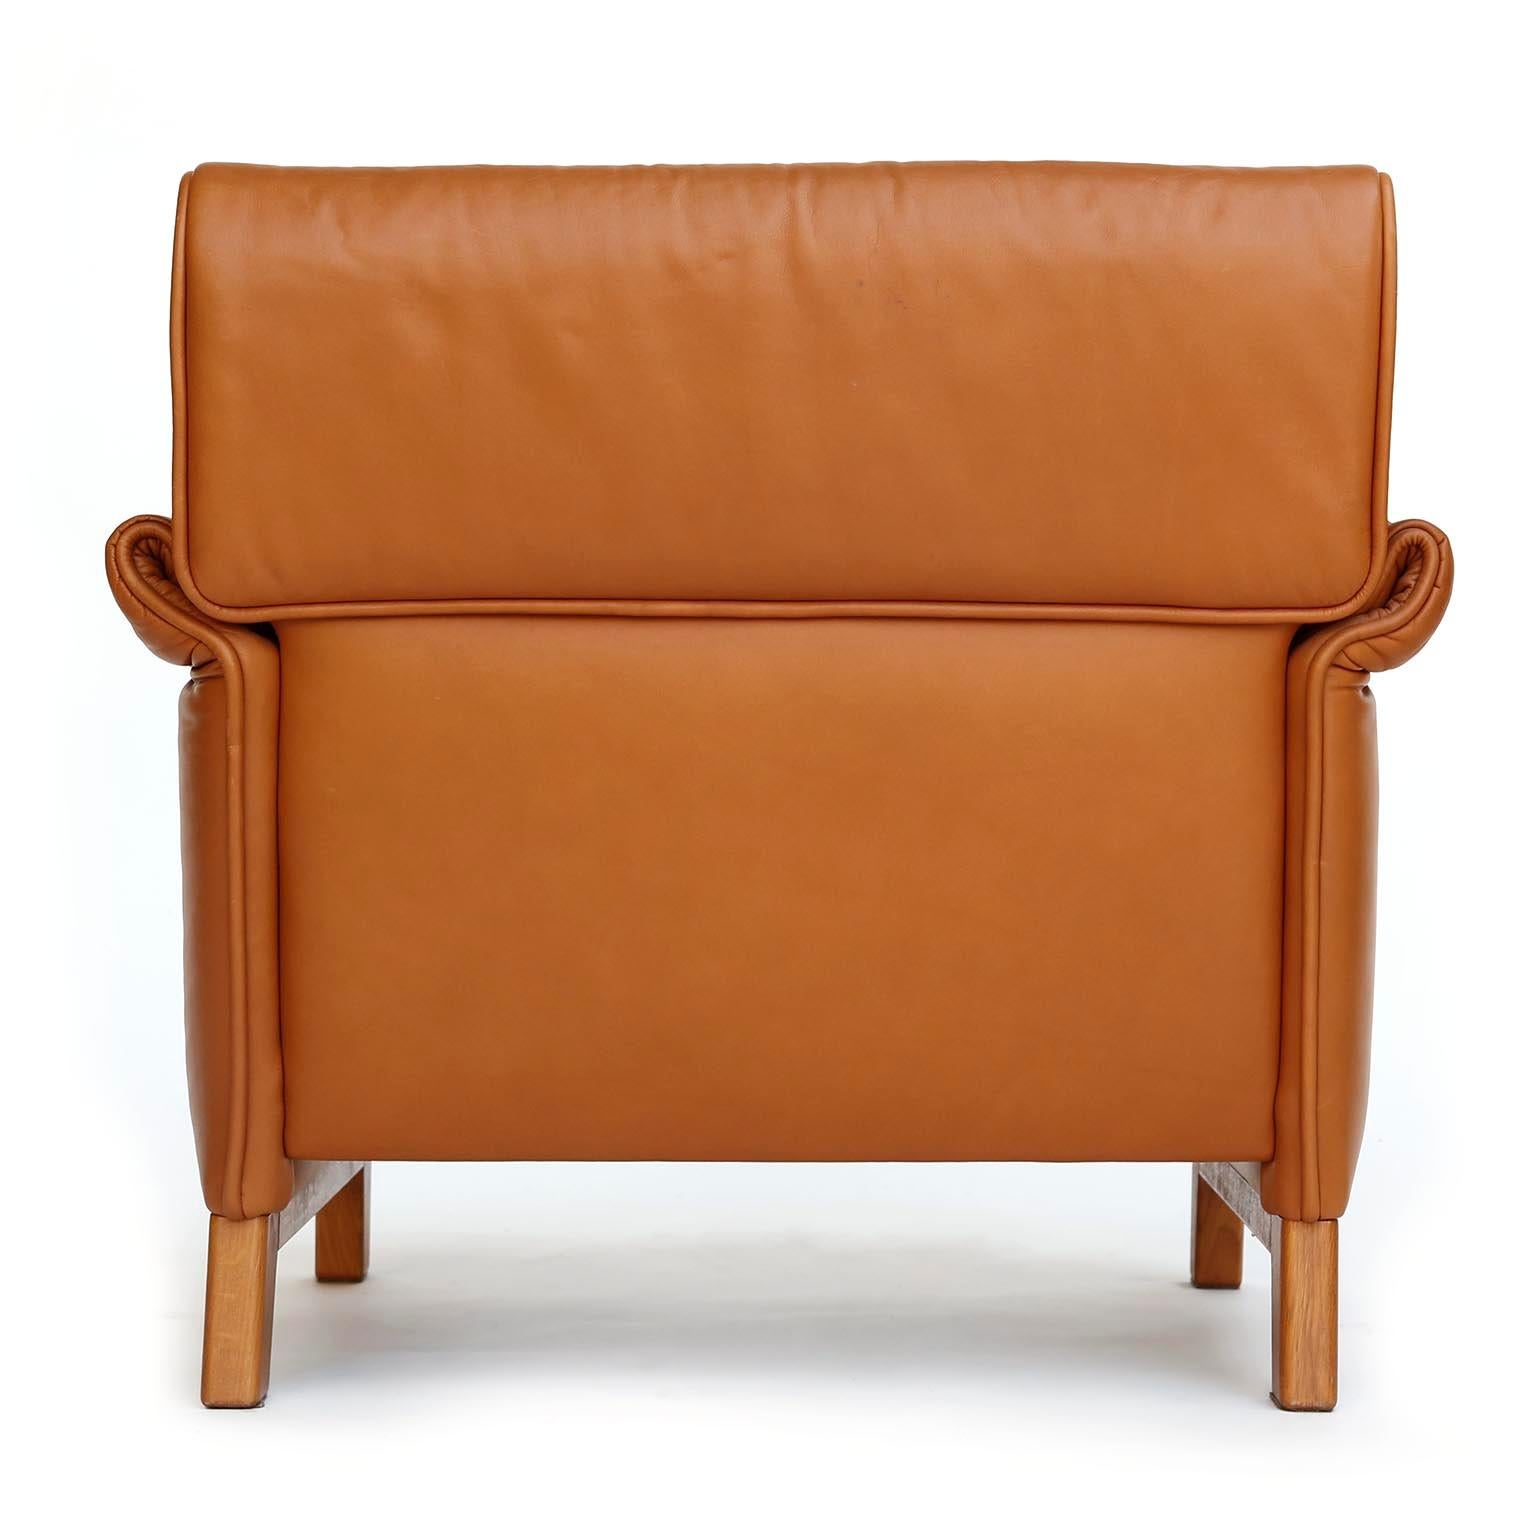 Four De Sede 'DS-14' Armchairs Lounge Chairs, Cognac Leather Teak, 1989 For Sale 2